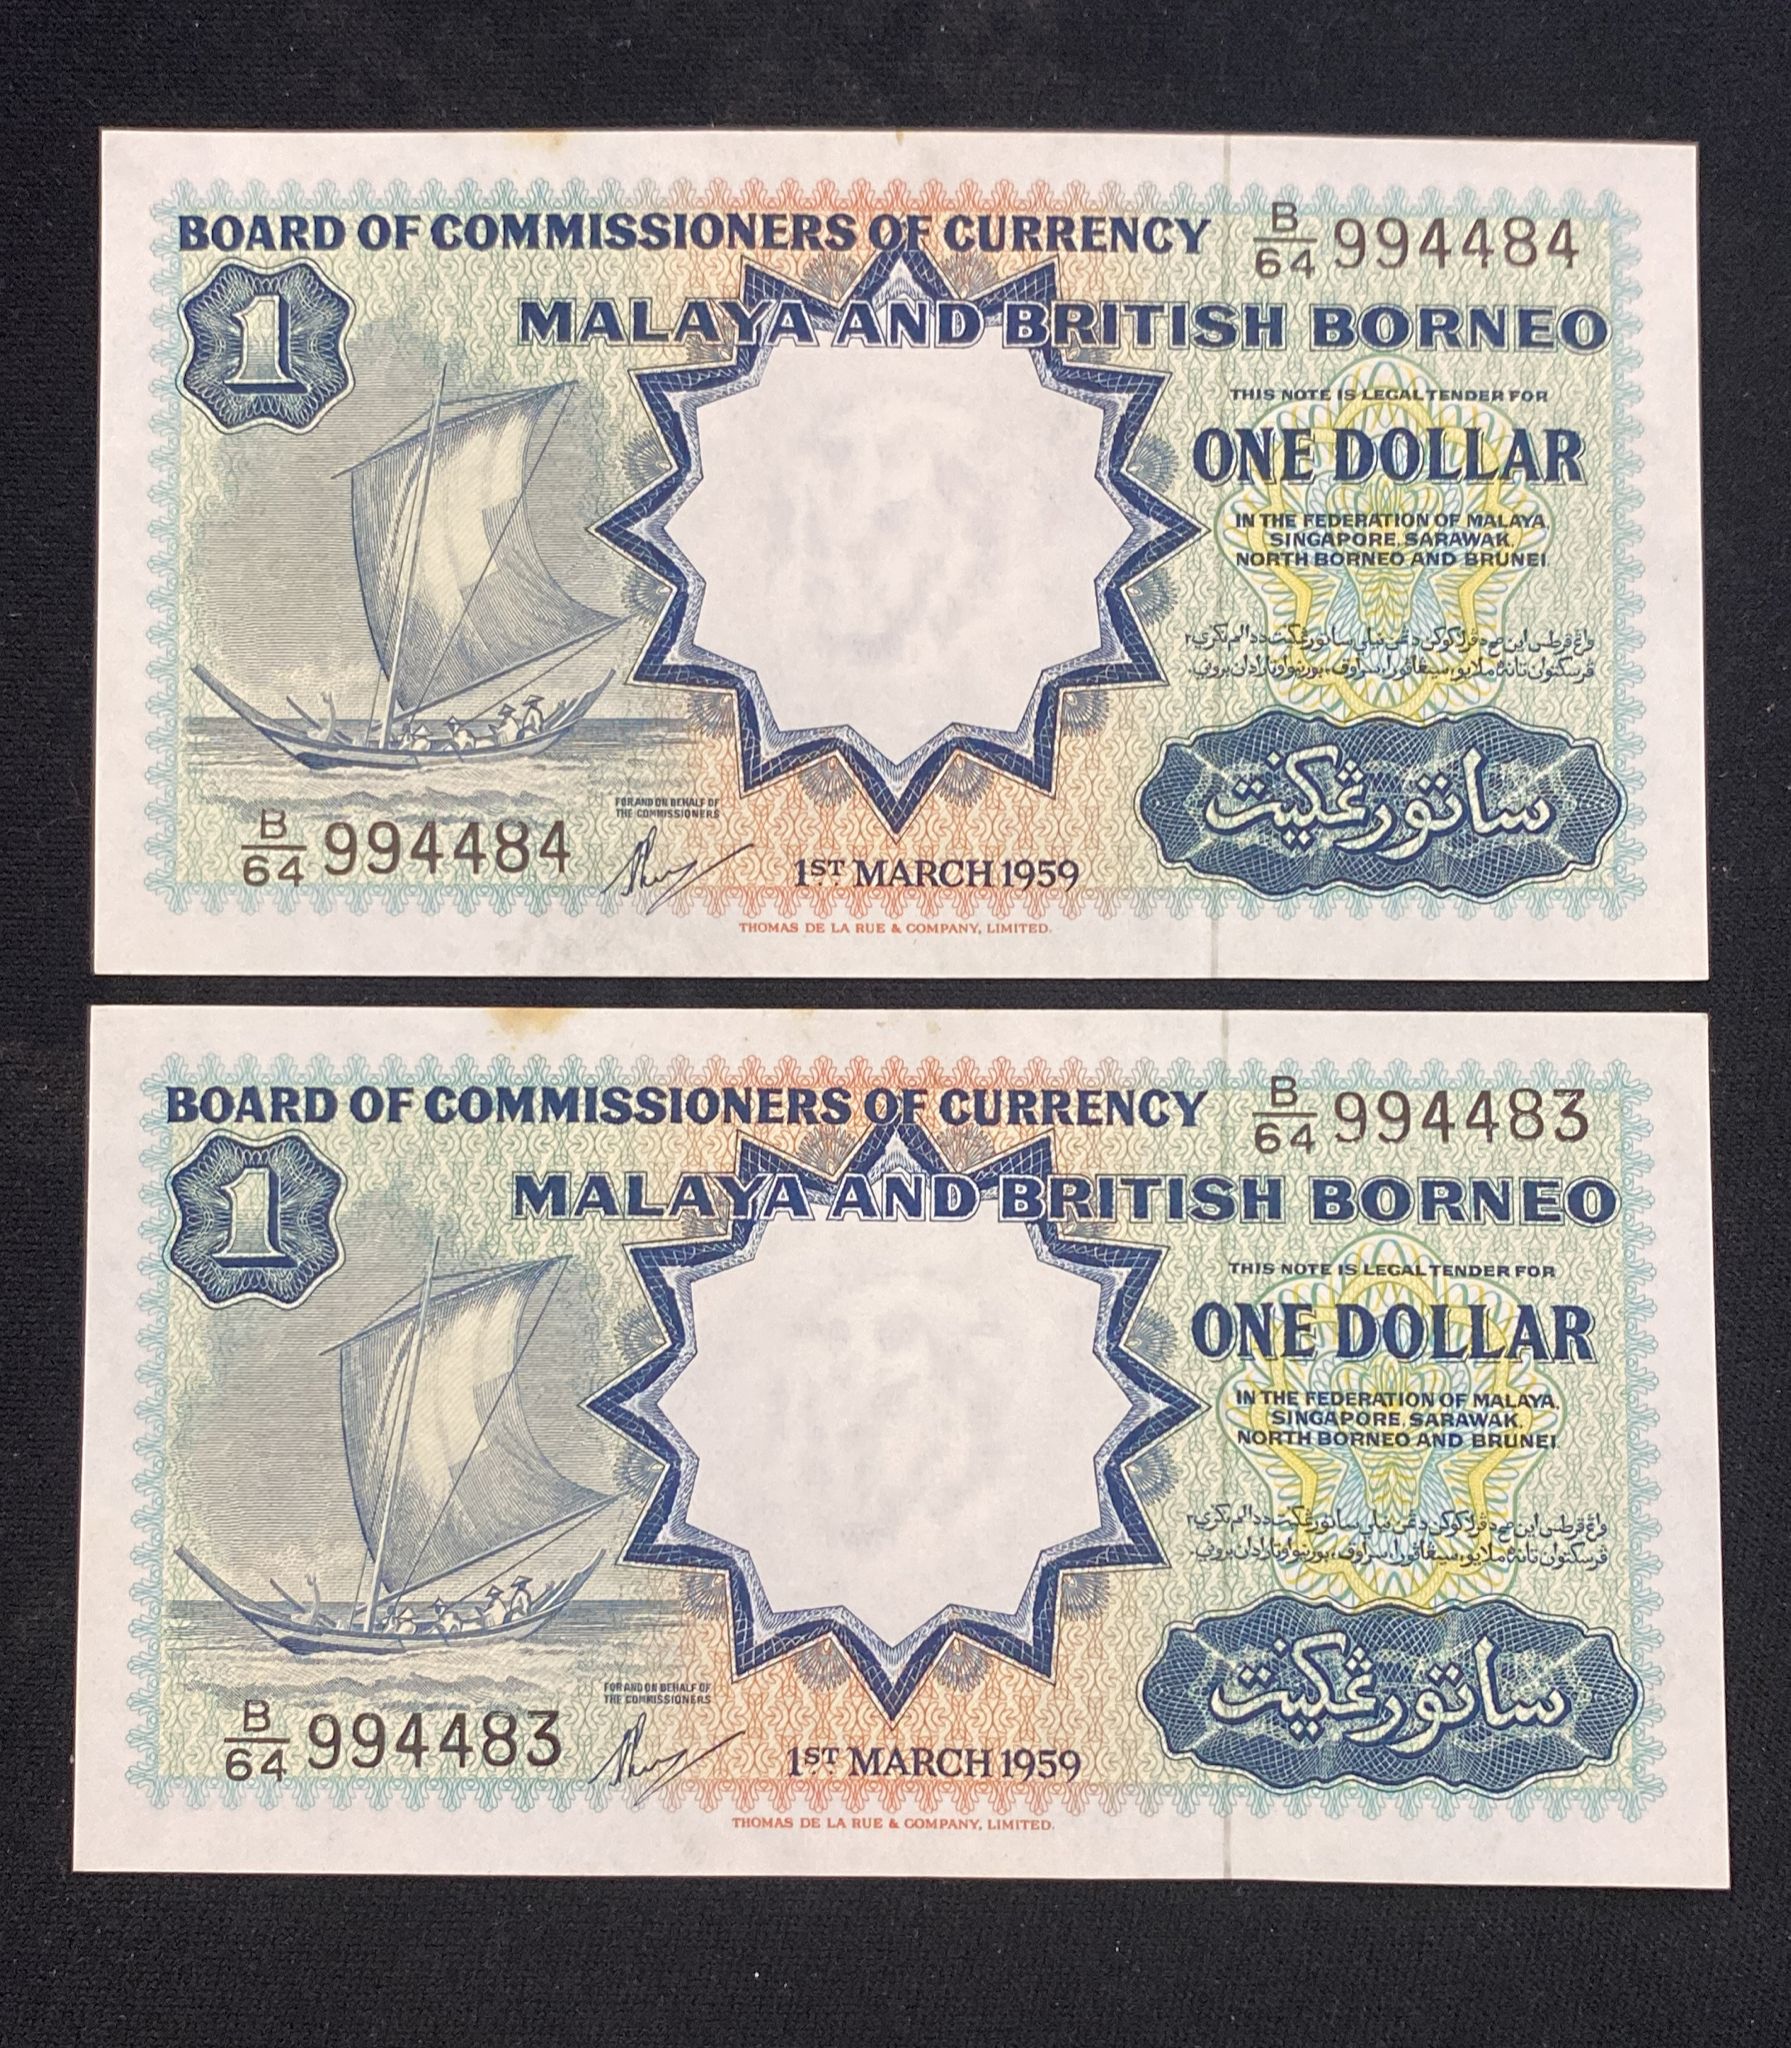 MALAYA & BRITISH BORNEO 1 DOLLAR 1959 PART-CONSECUTIVE (4) - Image 5 of 6